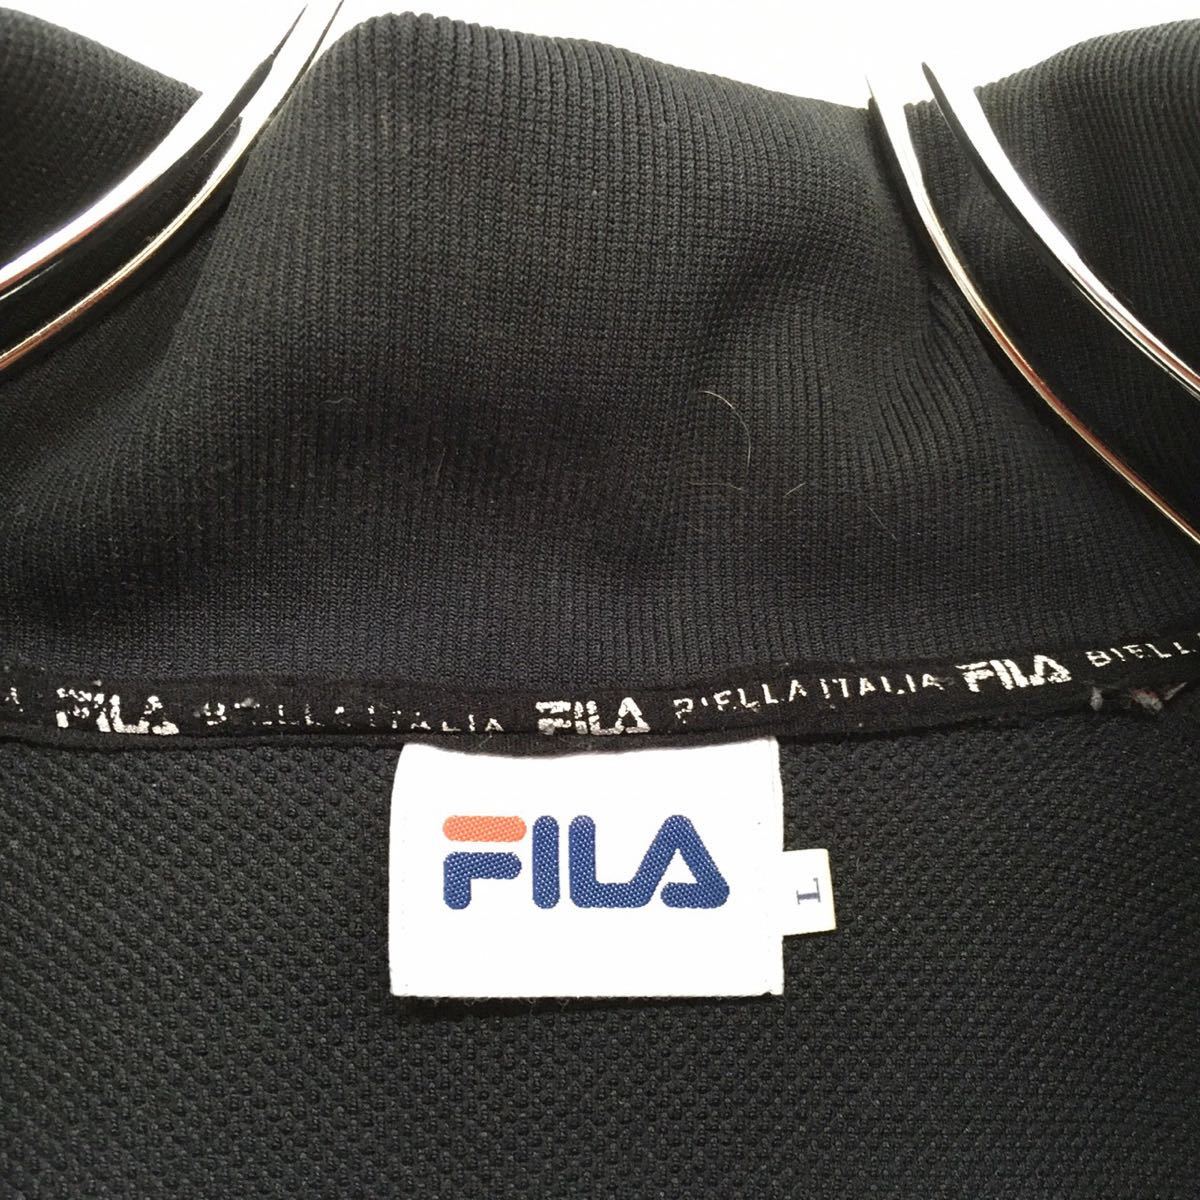 FILA filler спортивная куртка retro джерси вышивка большой Logo мужской L размер черный retro б/у одежда 